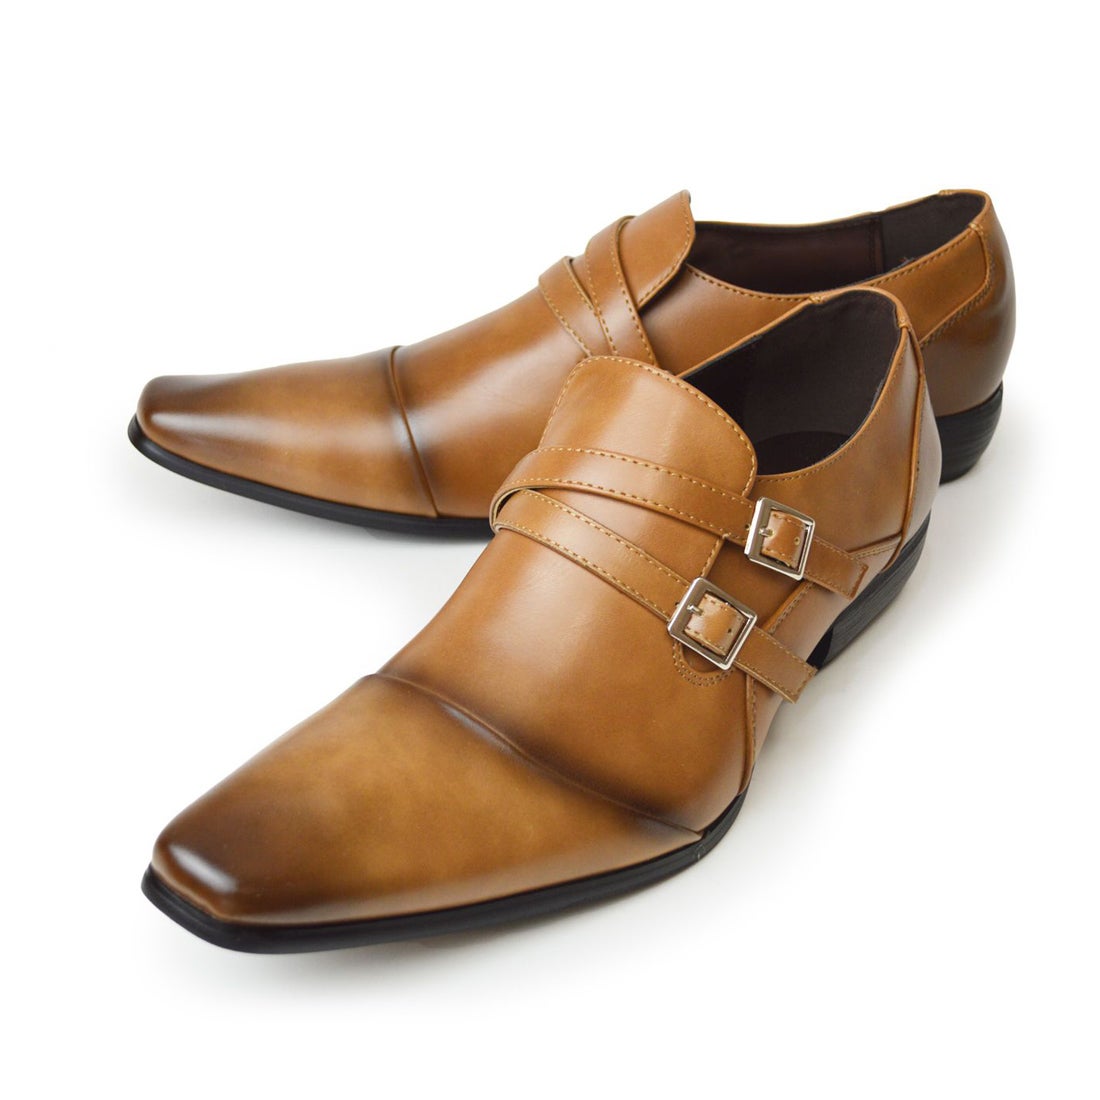 リチャード スミス RICHARD SMITH ビジネスシューズ メンズ 紳士靴 革靴 ビジネス ストレートチップ スクエアトゥ モンクストラップ  （ライトブラウン） -waja bazar 海外ファッションブランド通販サイト【公式】